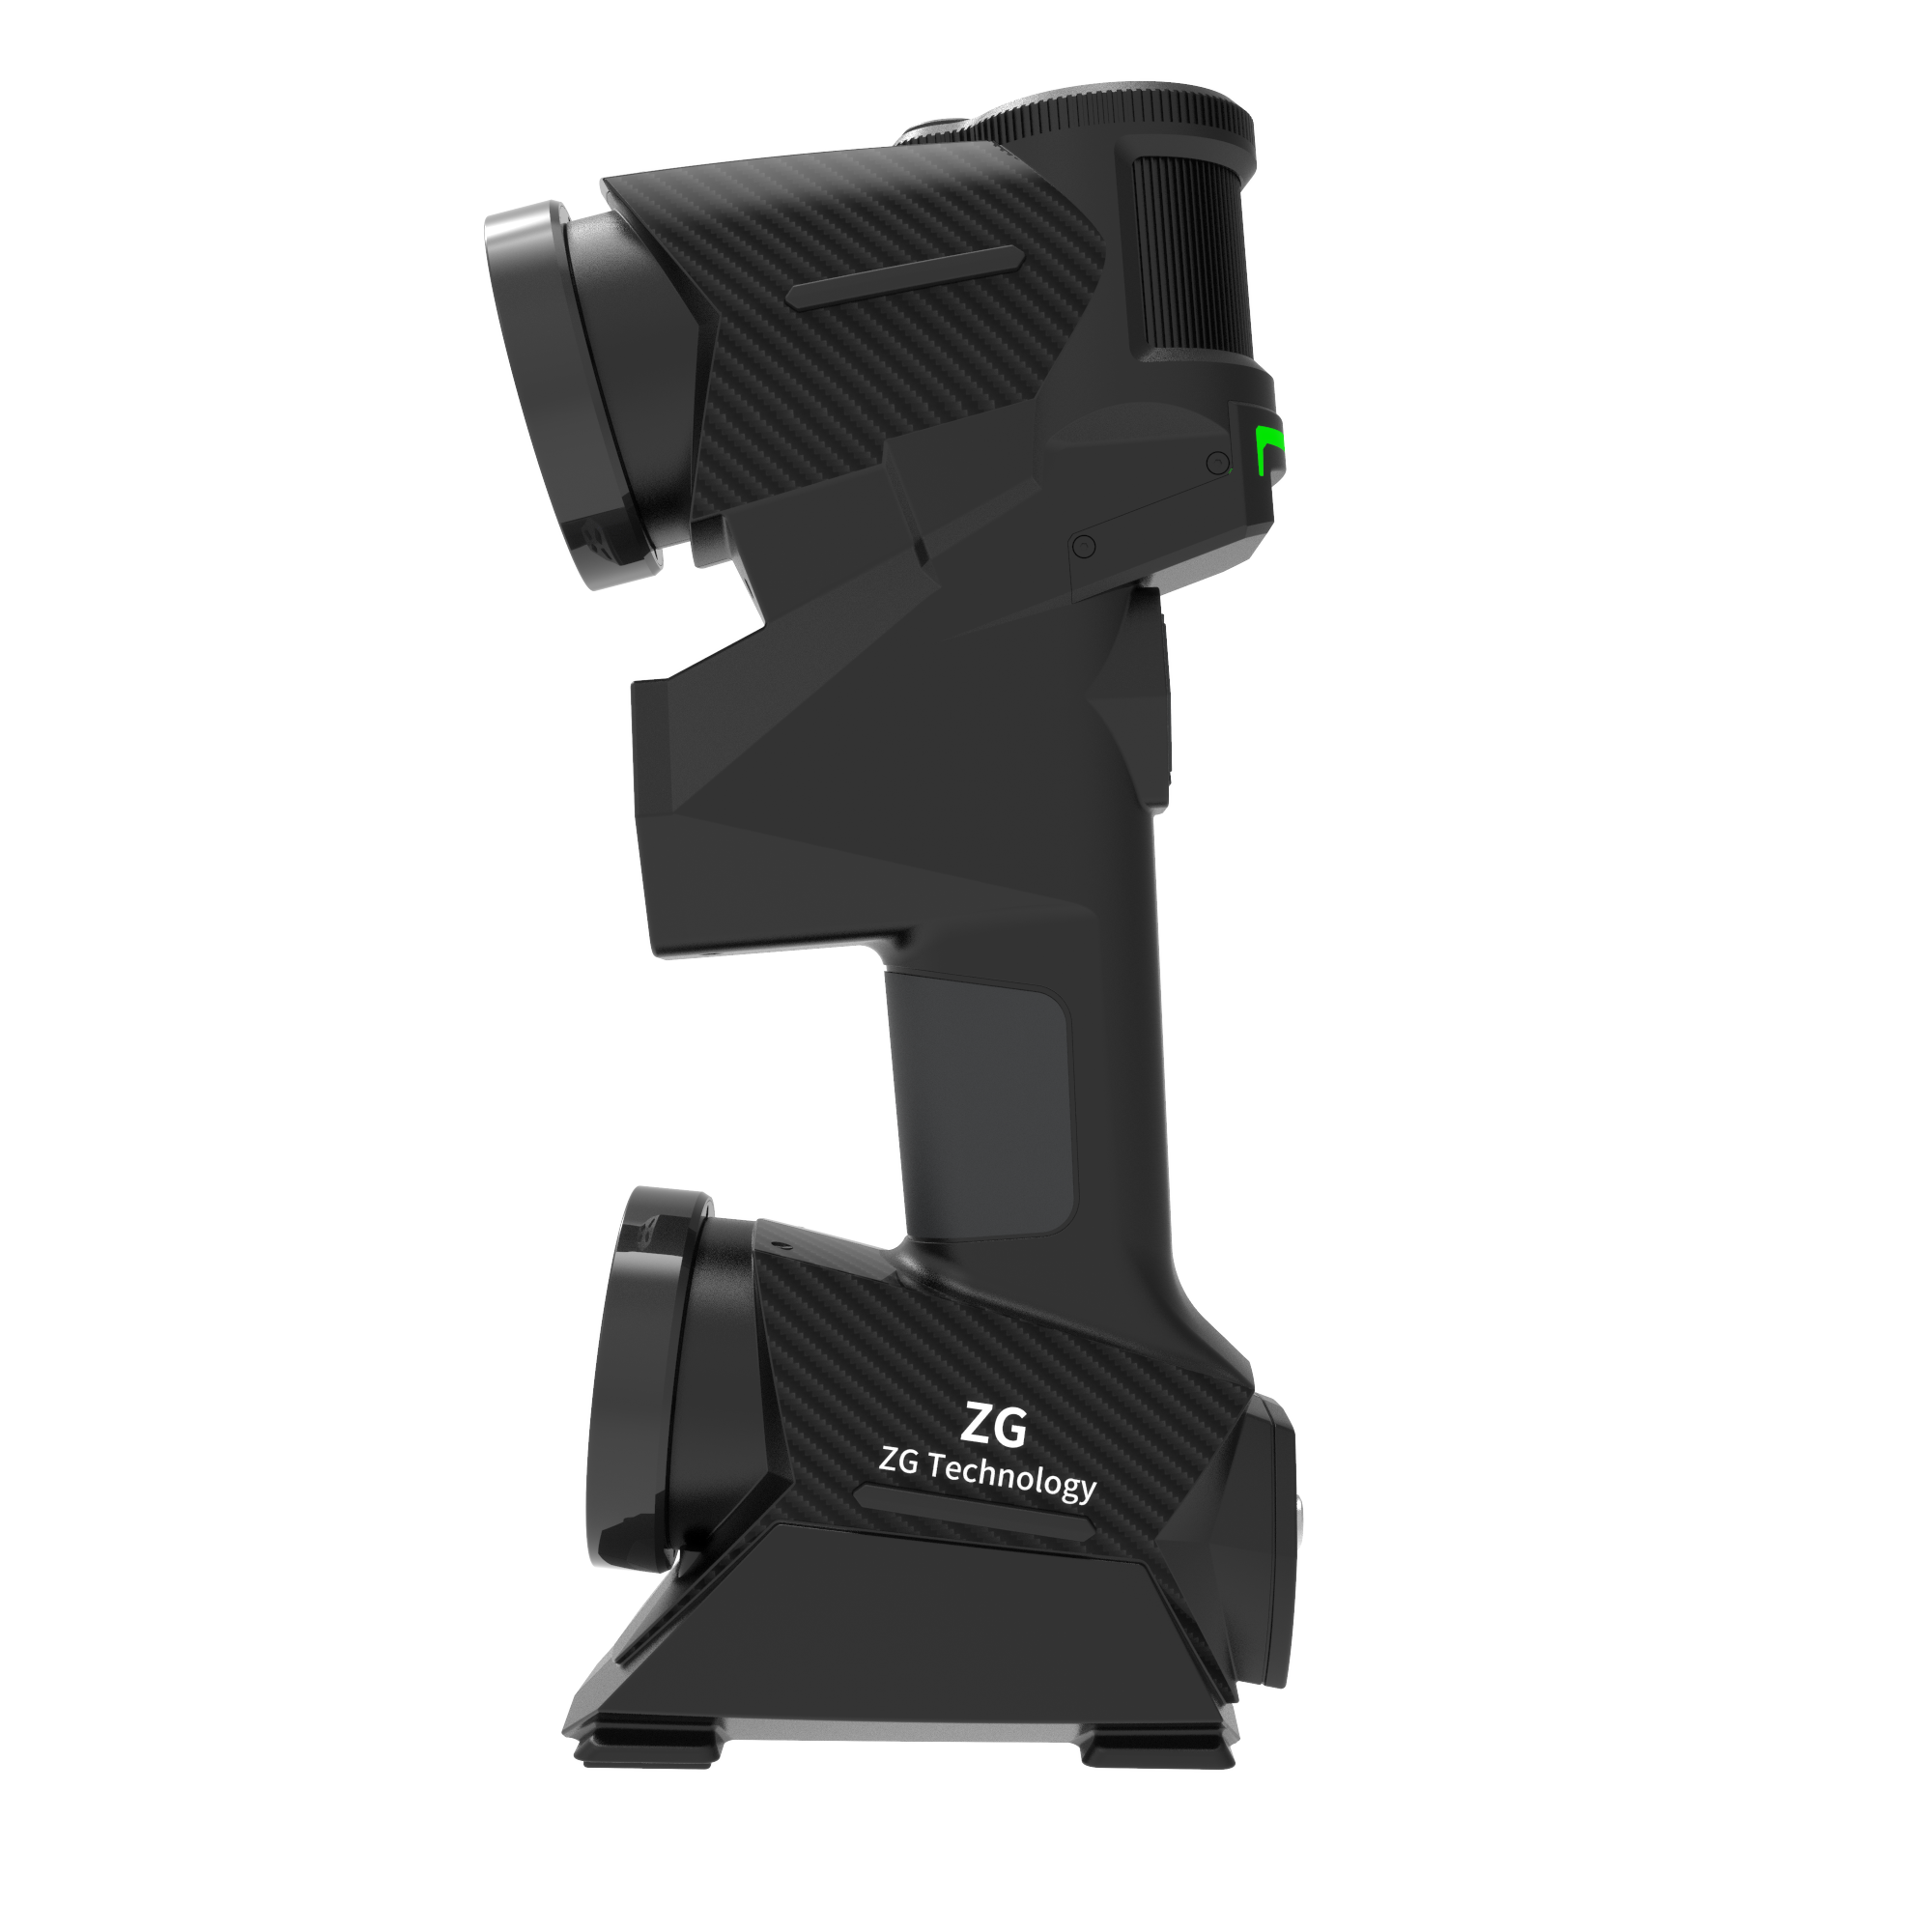 MarvelScanトラッカー無料マーカー無料3Dモデリング用の高精度3Dスキャナー